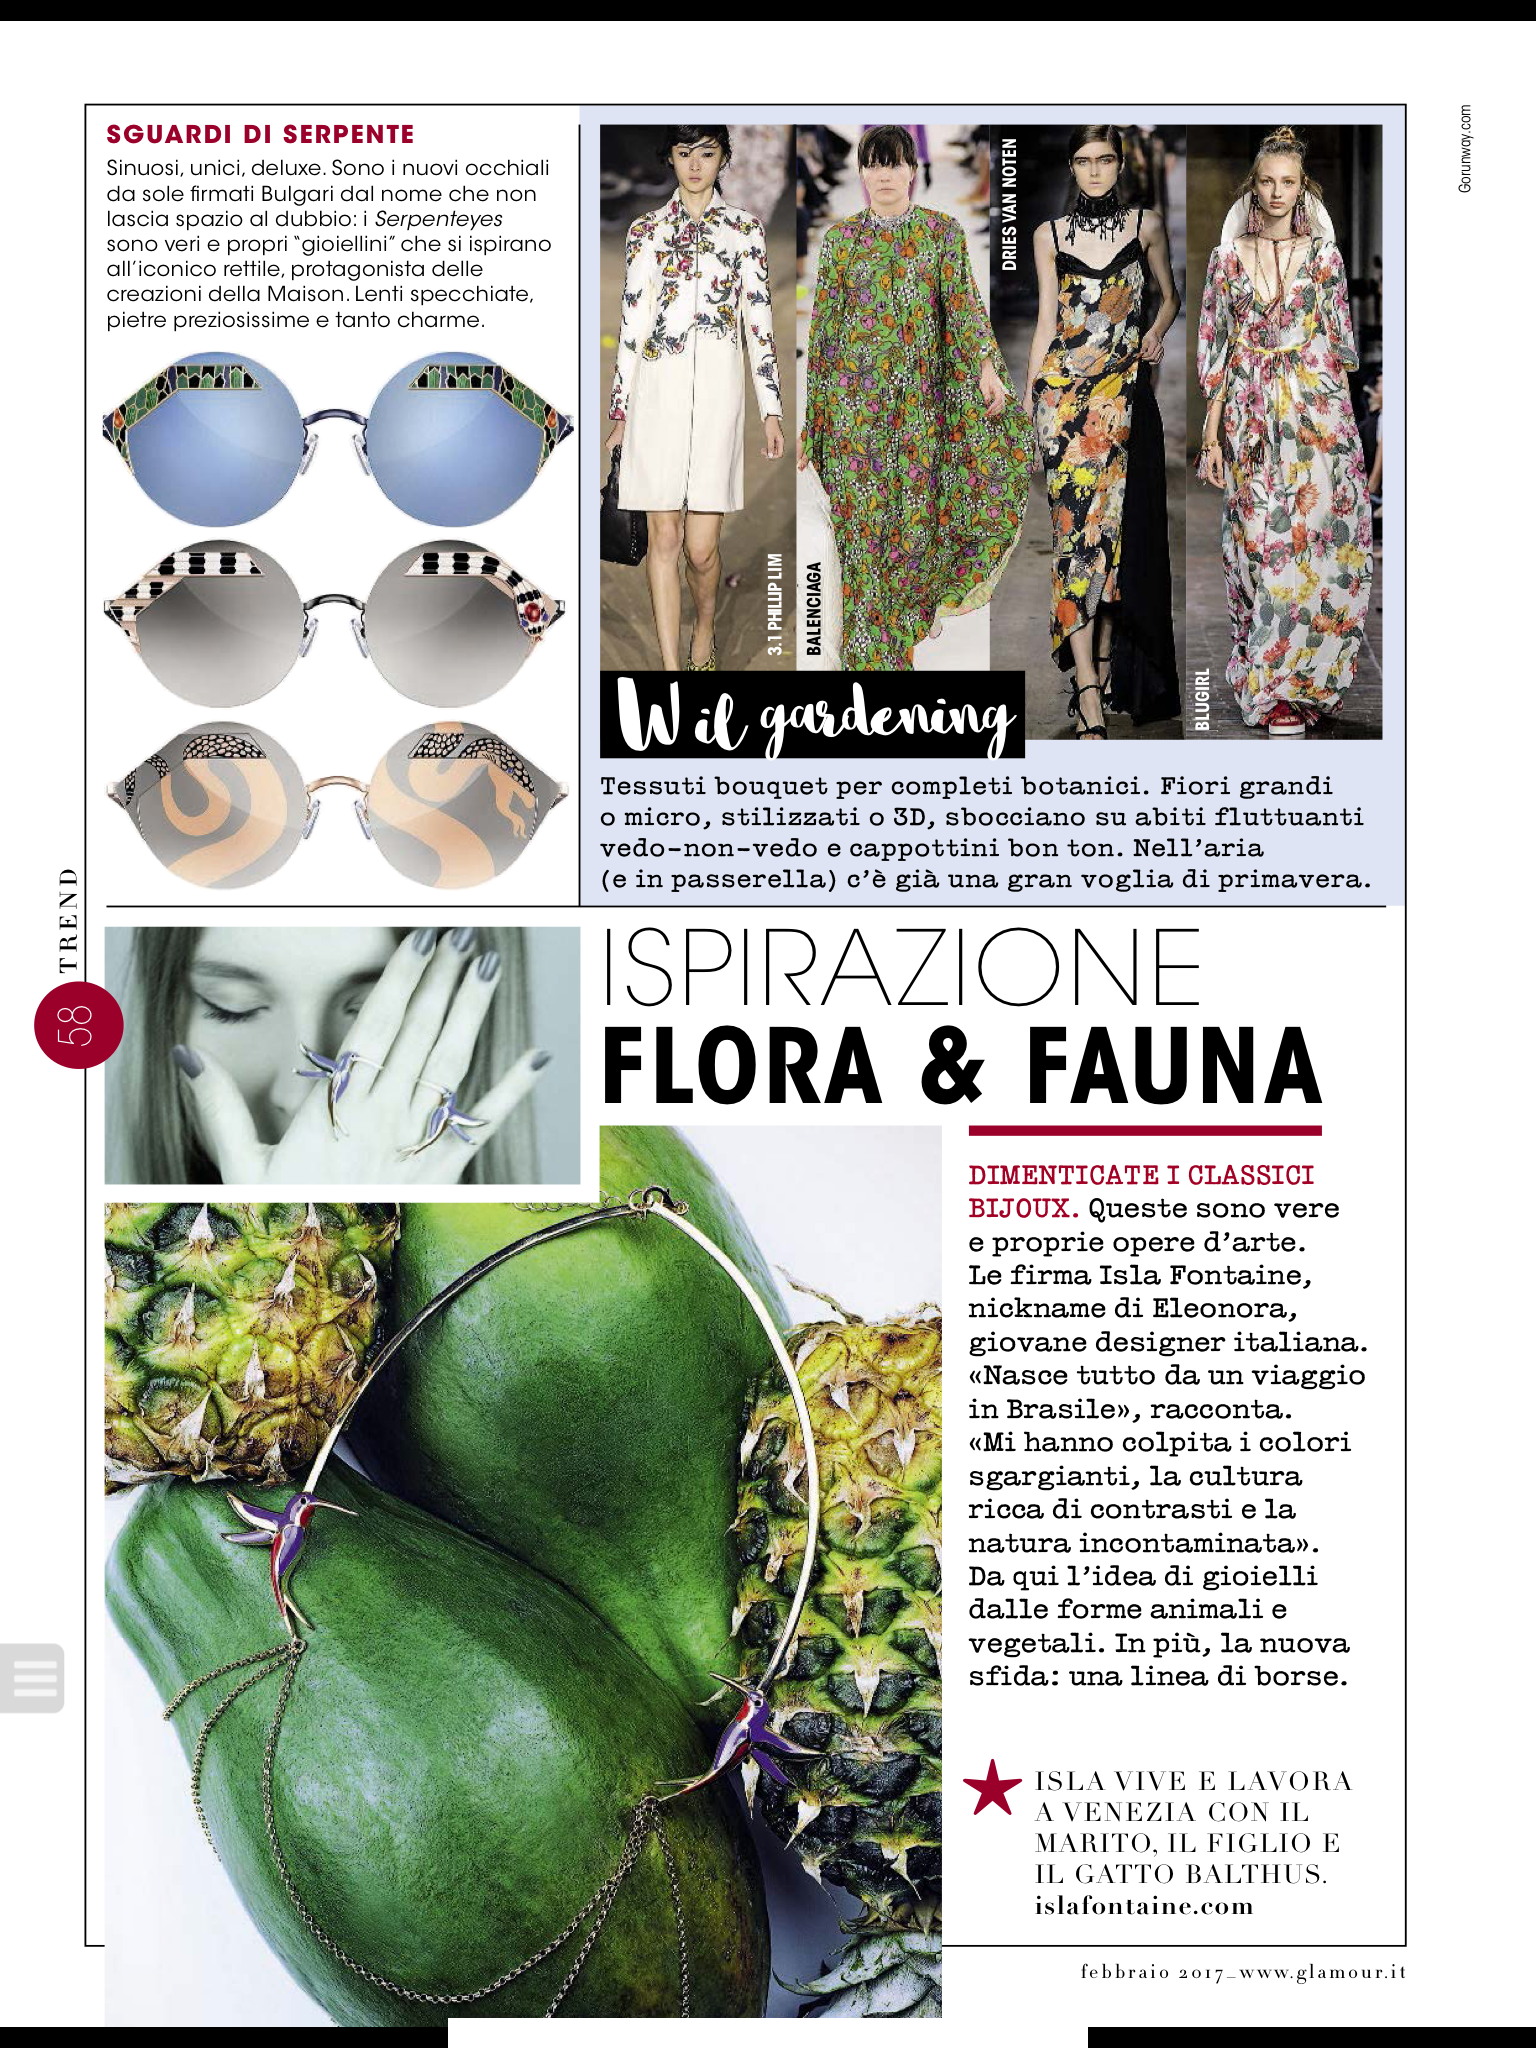 Isla Fontaine on Glamour Magazine